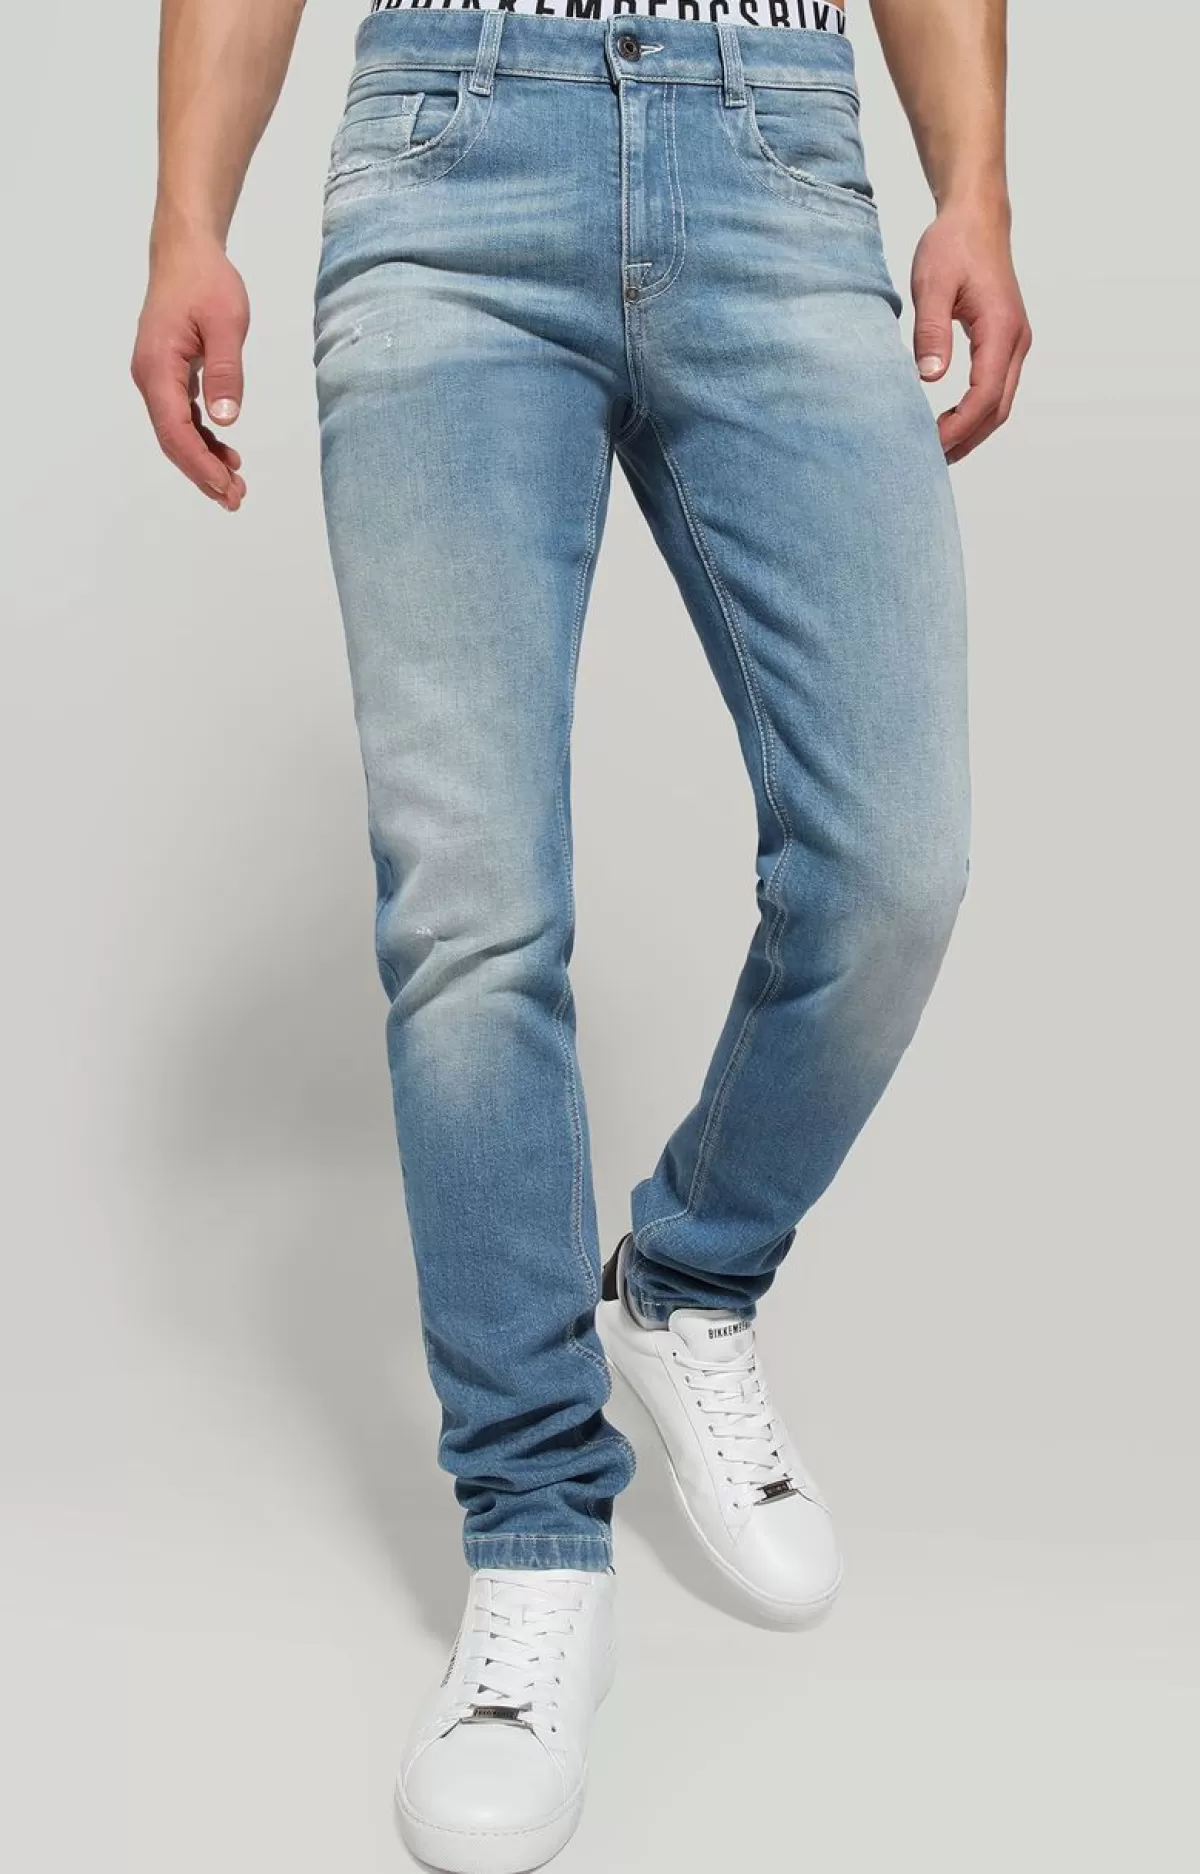 Bikkembergs Men'S Slim Fit Jeans With Printed Back Blue Denim Flash Sale